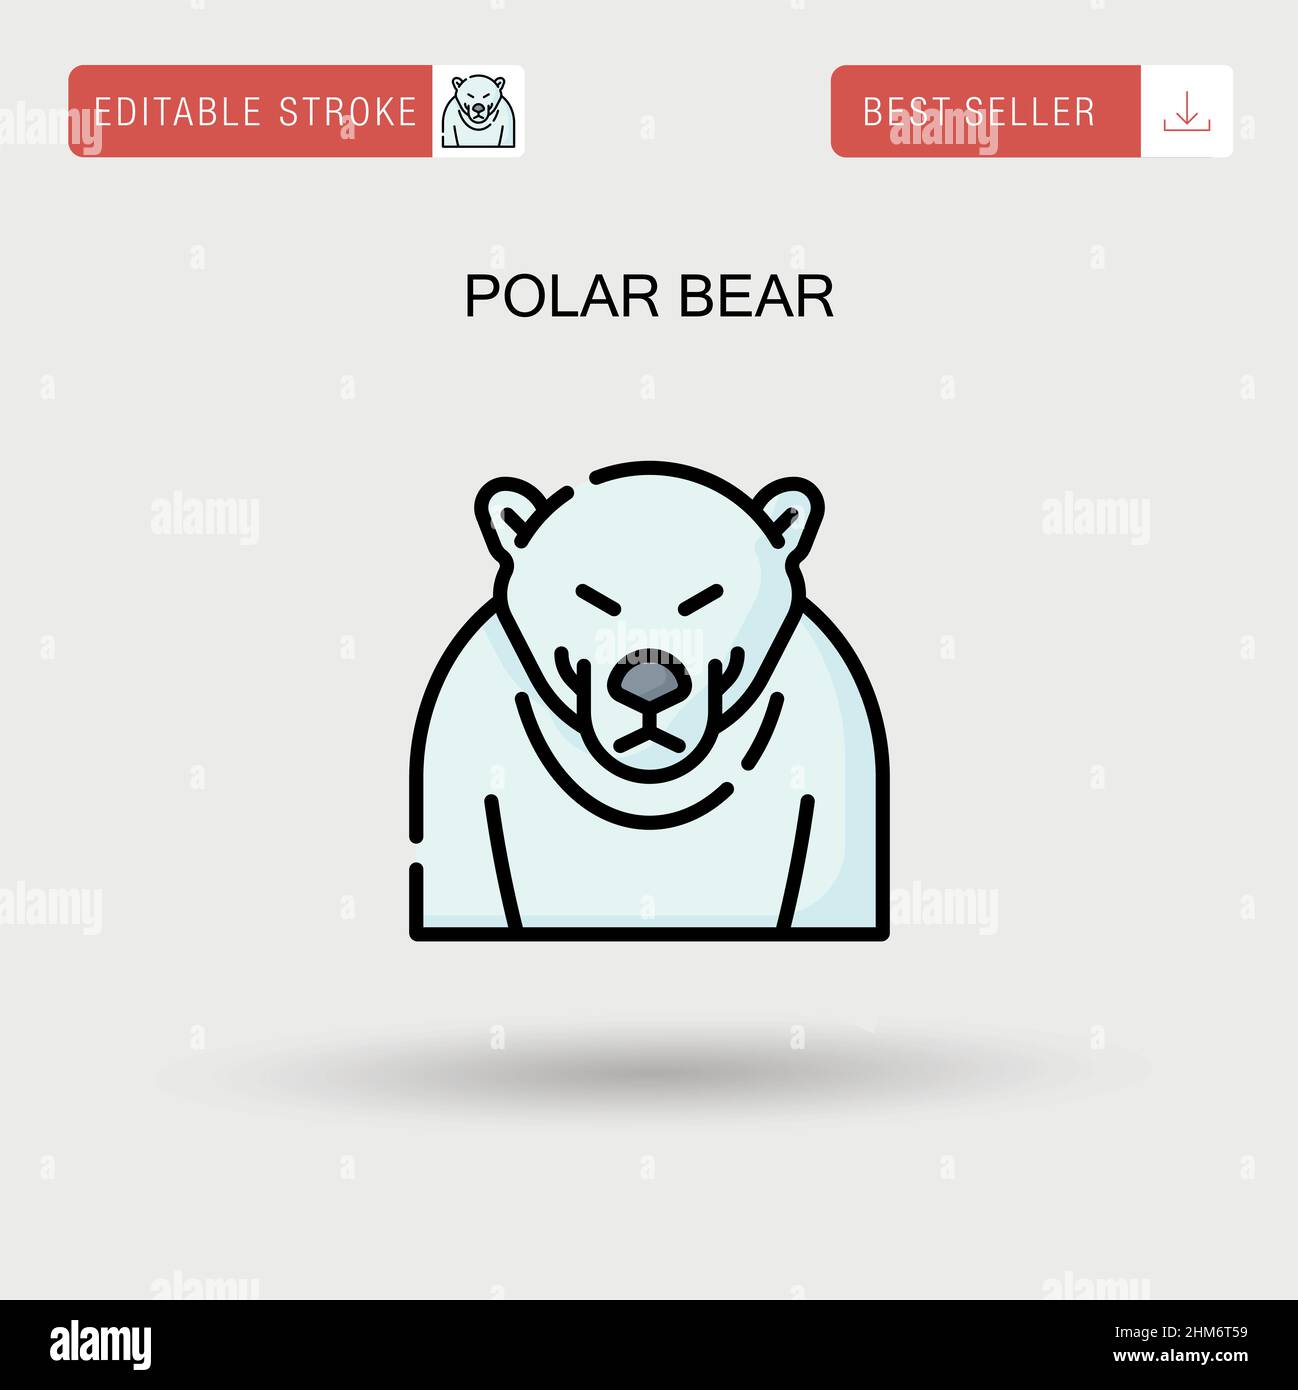 Einfaches Vektorsymbol für Eisbären. Stock Vektor